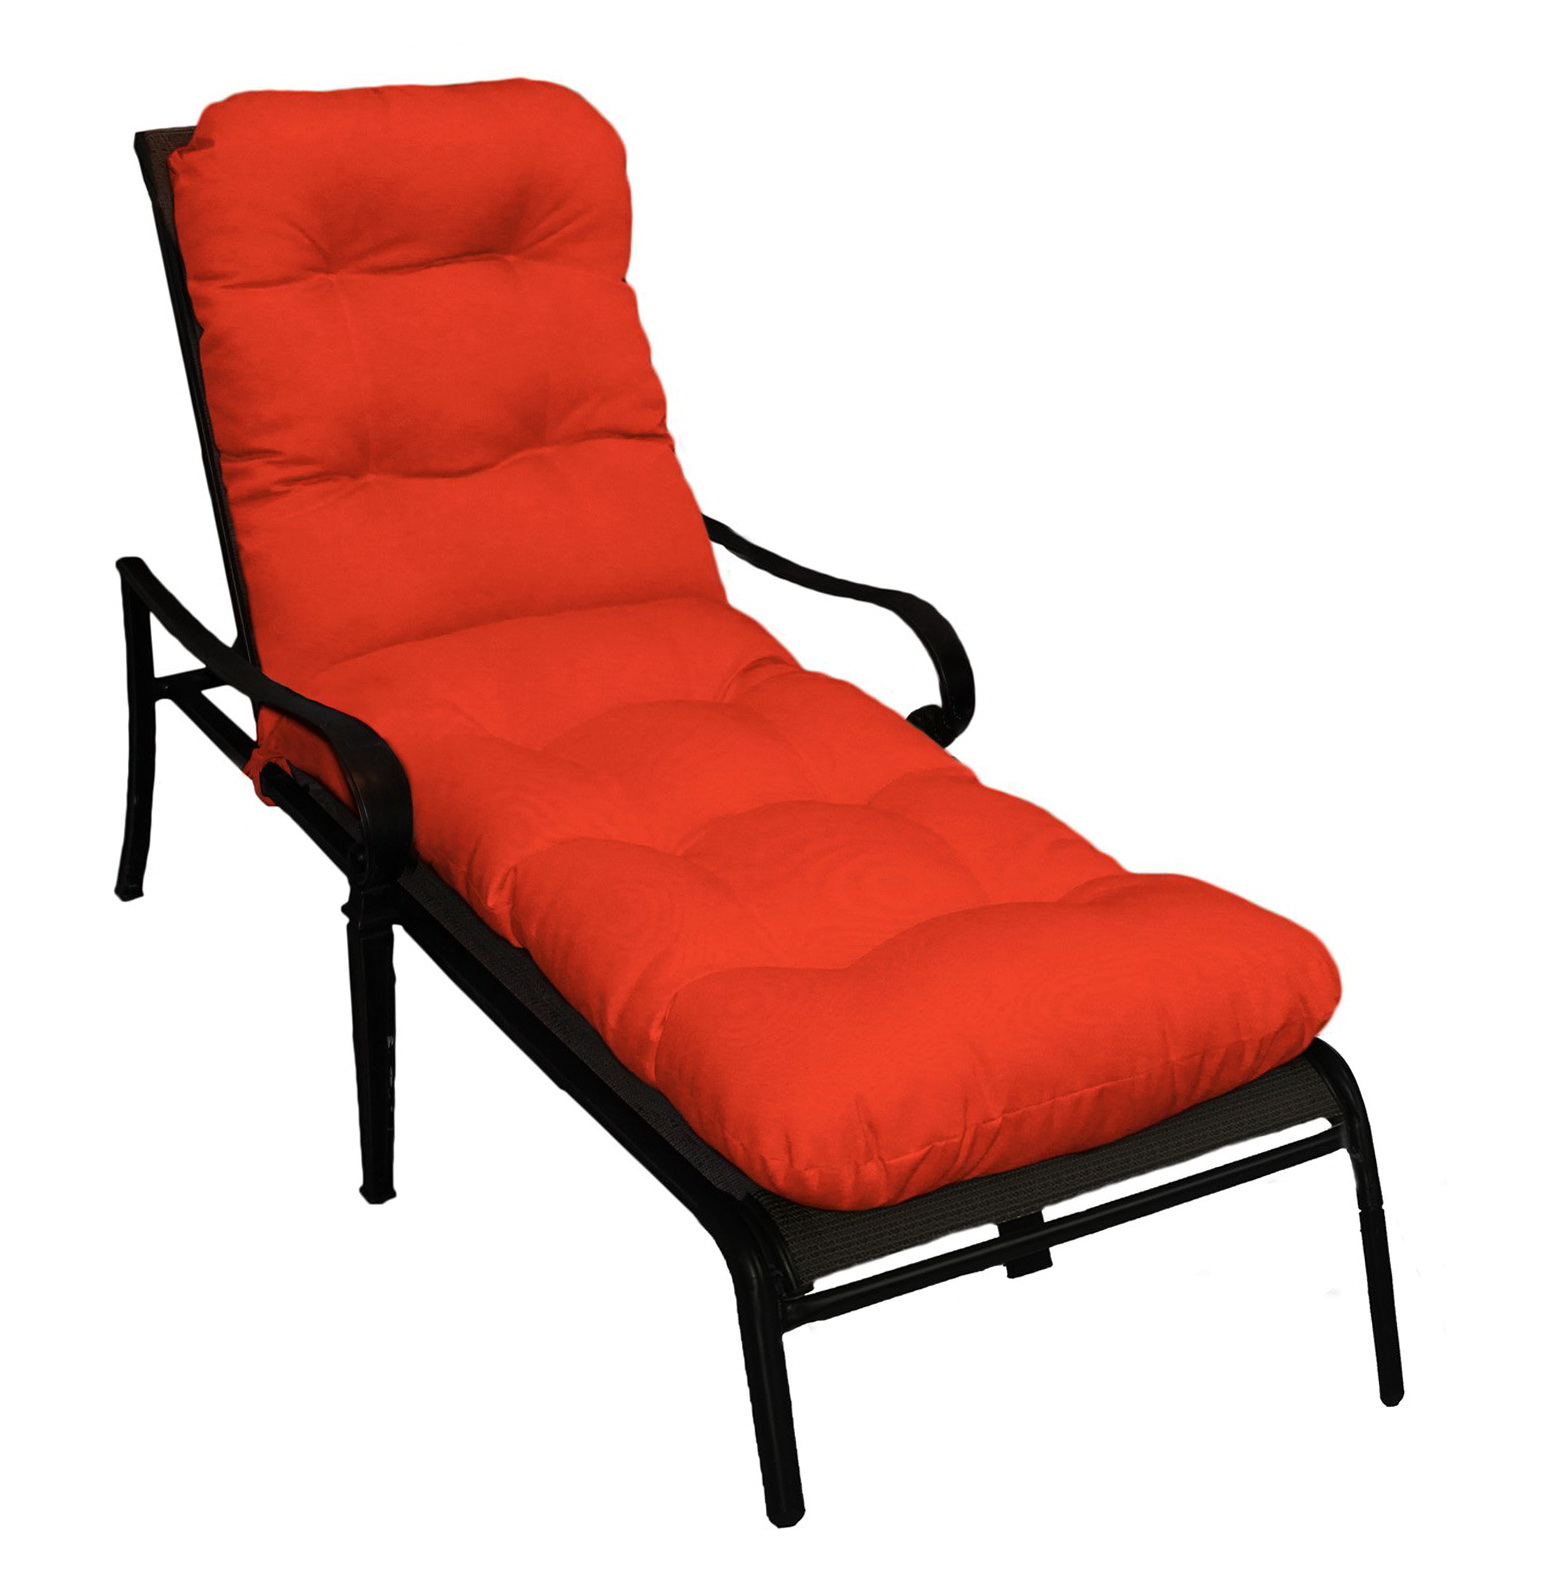 chair cushions target